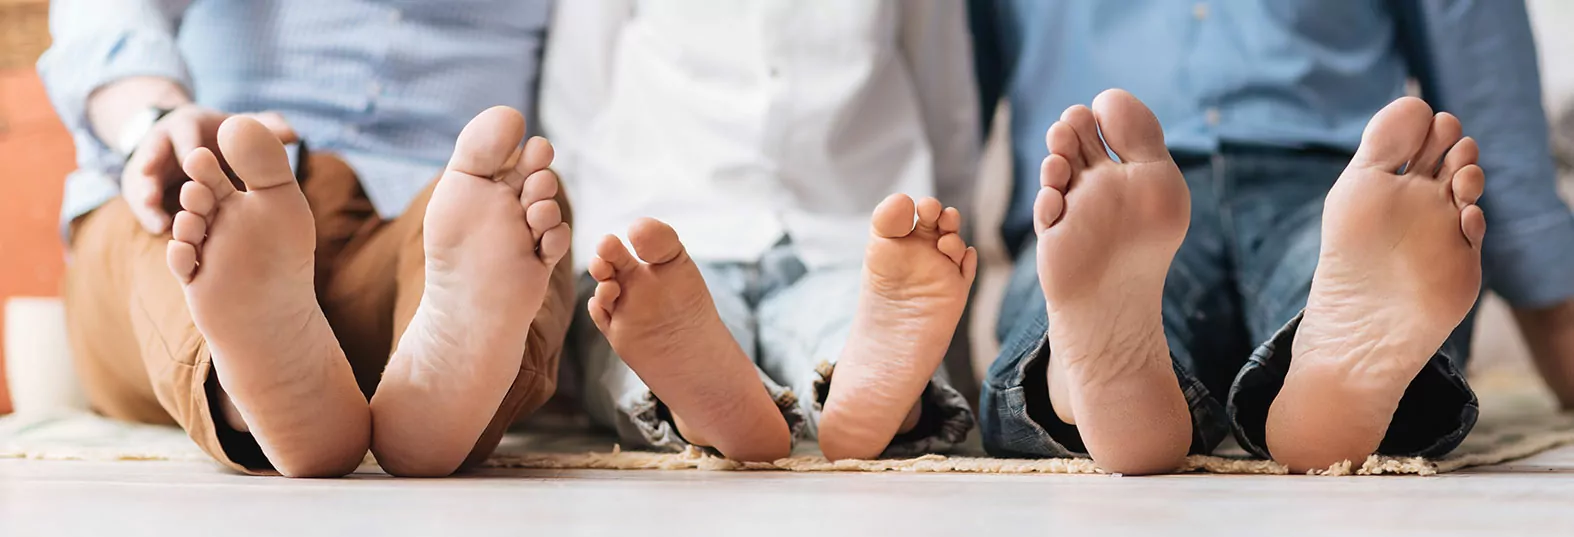 Fußgesundheit – ein wichtiges Thema für Jung und Alt